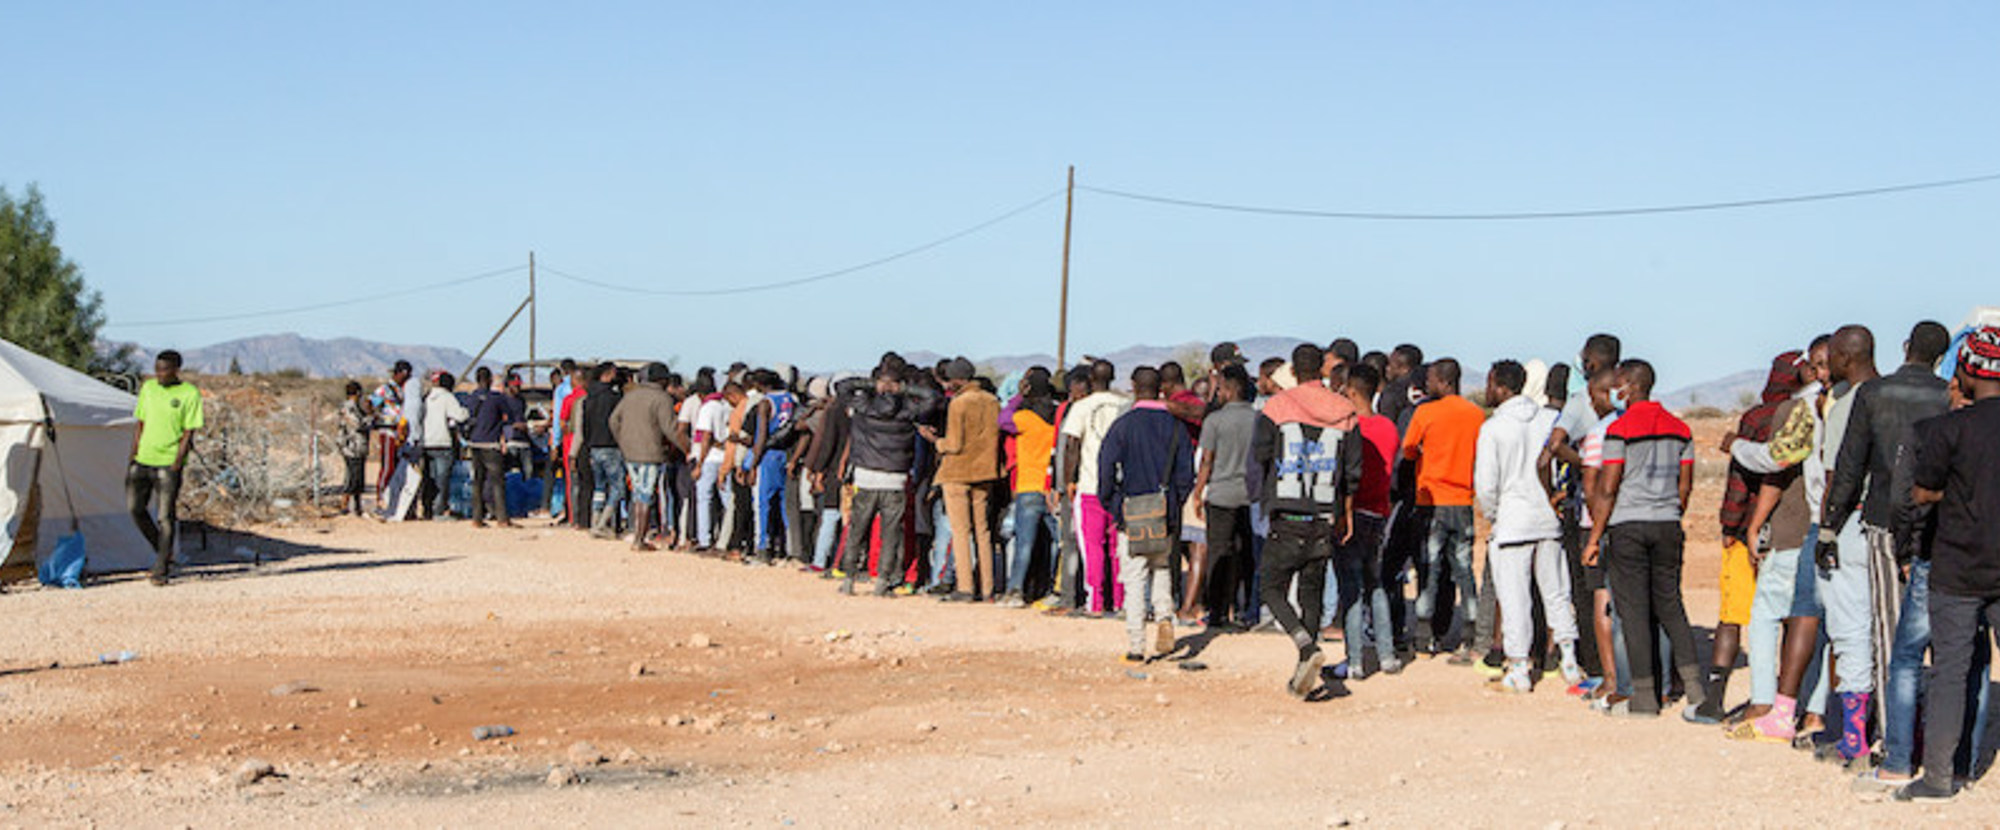 Schlange an der Essensausgabe am Erstaufnahmelager Pournara für Flüchtlinge und Migranten am 11. November 2021 in Kokkinotrimithia (Zypern).